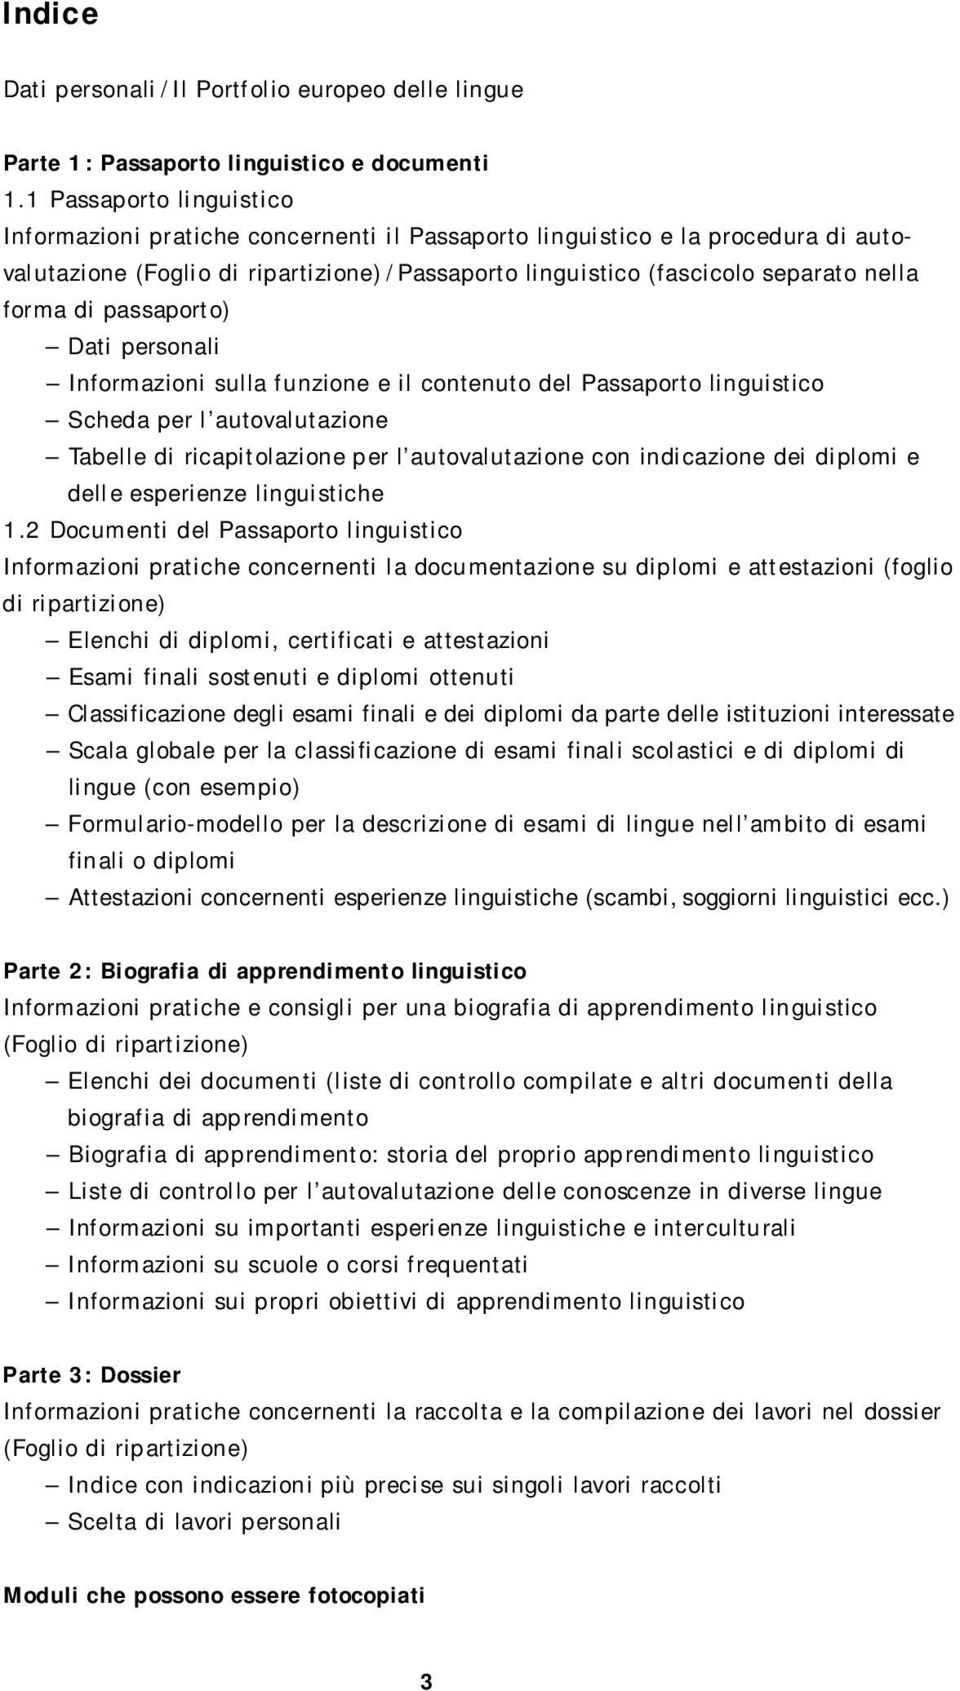 forma di passaporto) Dati personali Informazioni sulla funzione e il contenuto del Passaporto linguistico Scheda per l autovalutazione Tabelle di ricapitolazione per l autovalutazione con indicazione